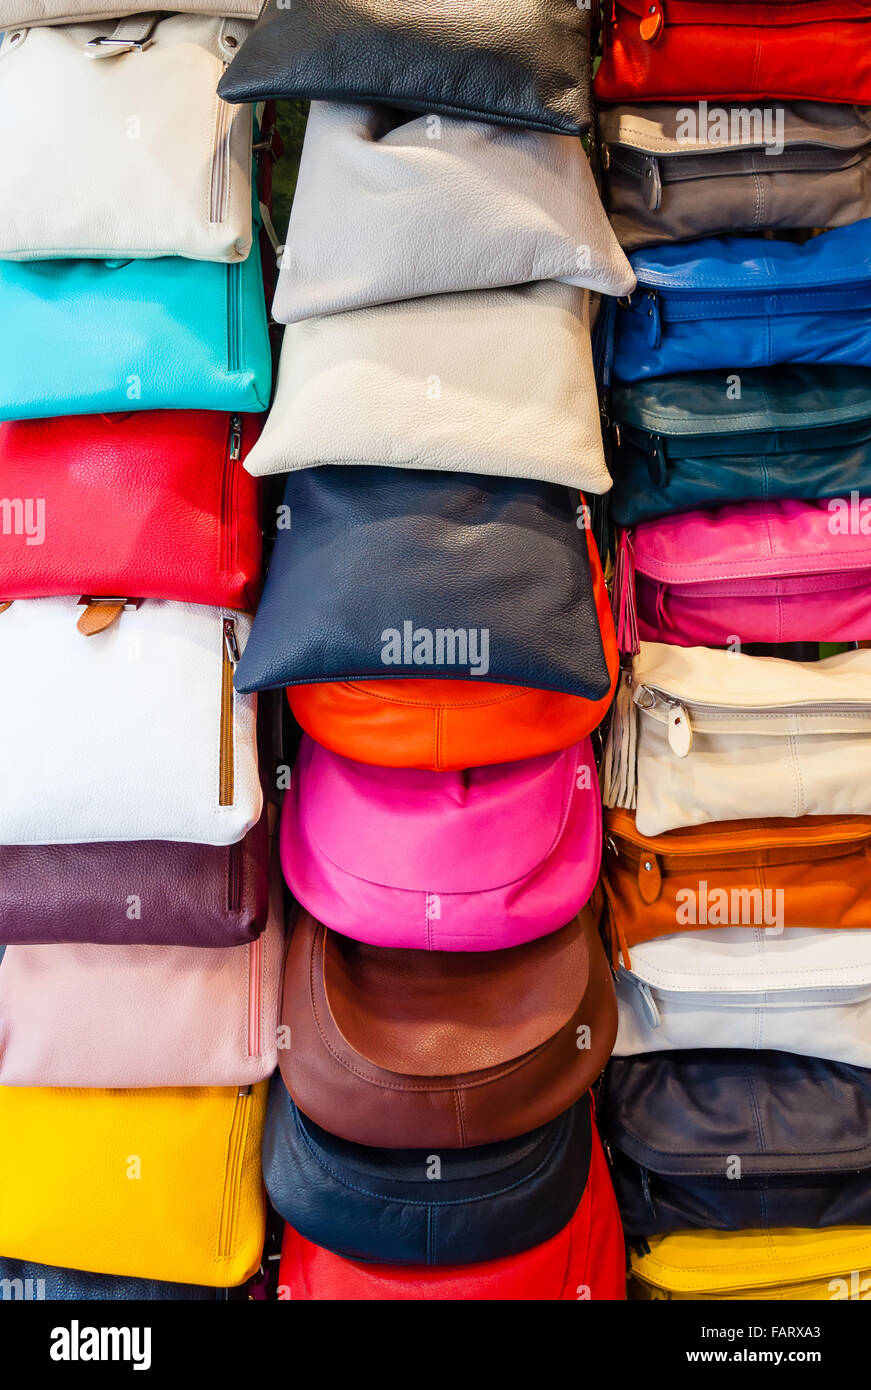 colorful handbags on display Stock Photo